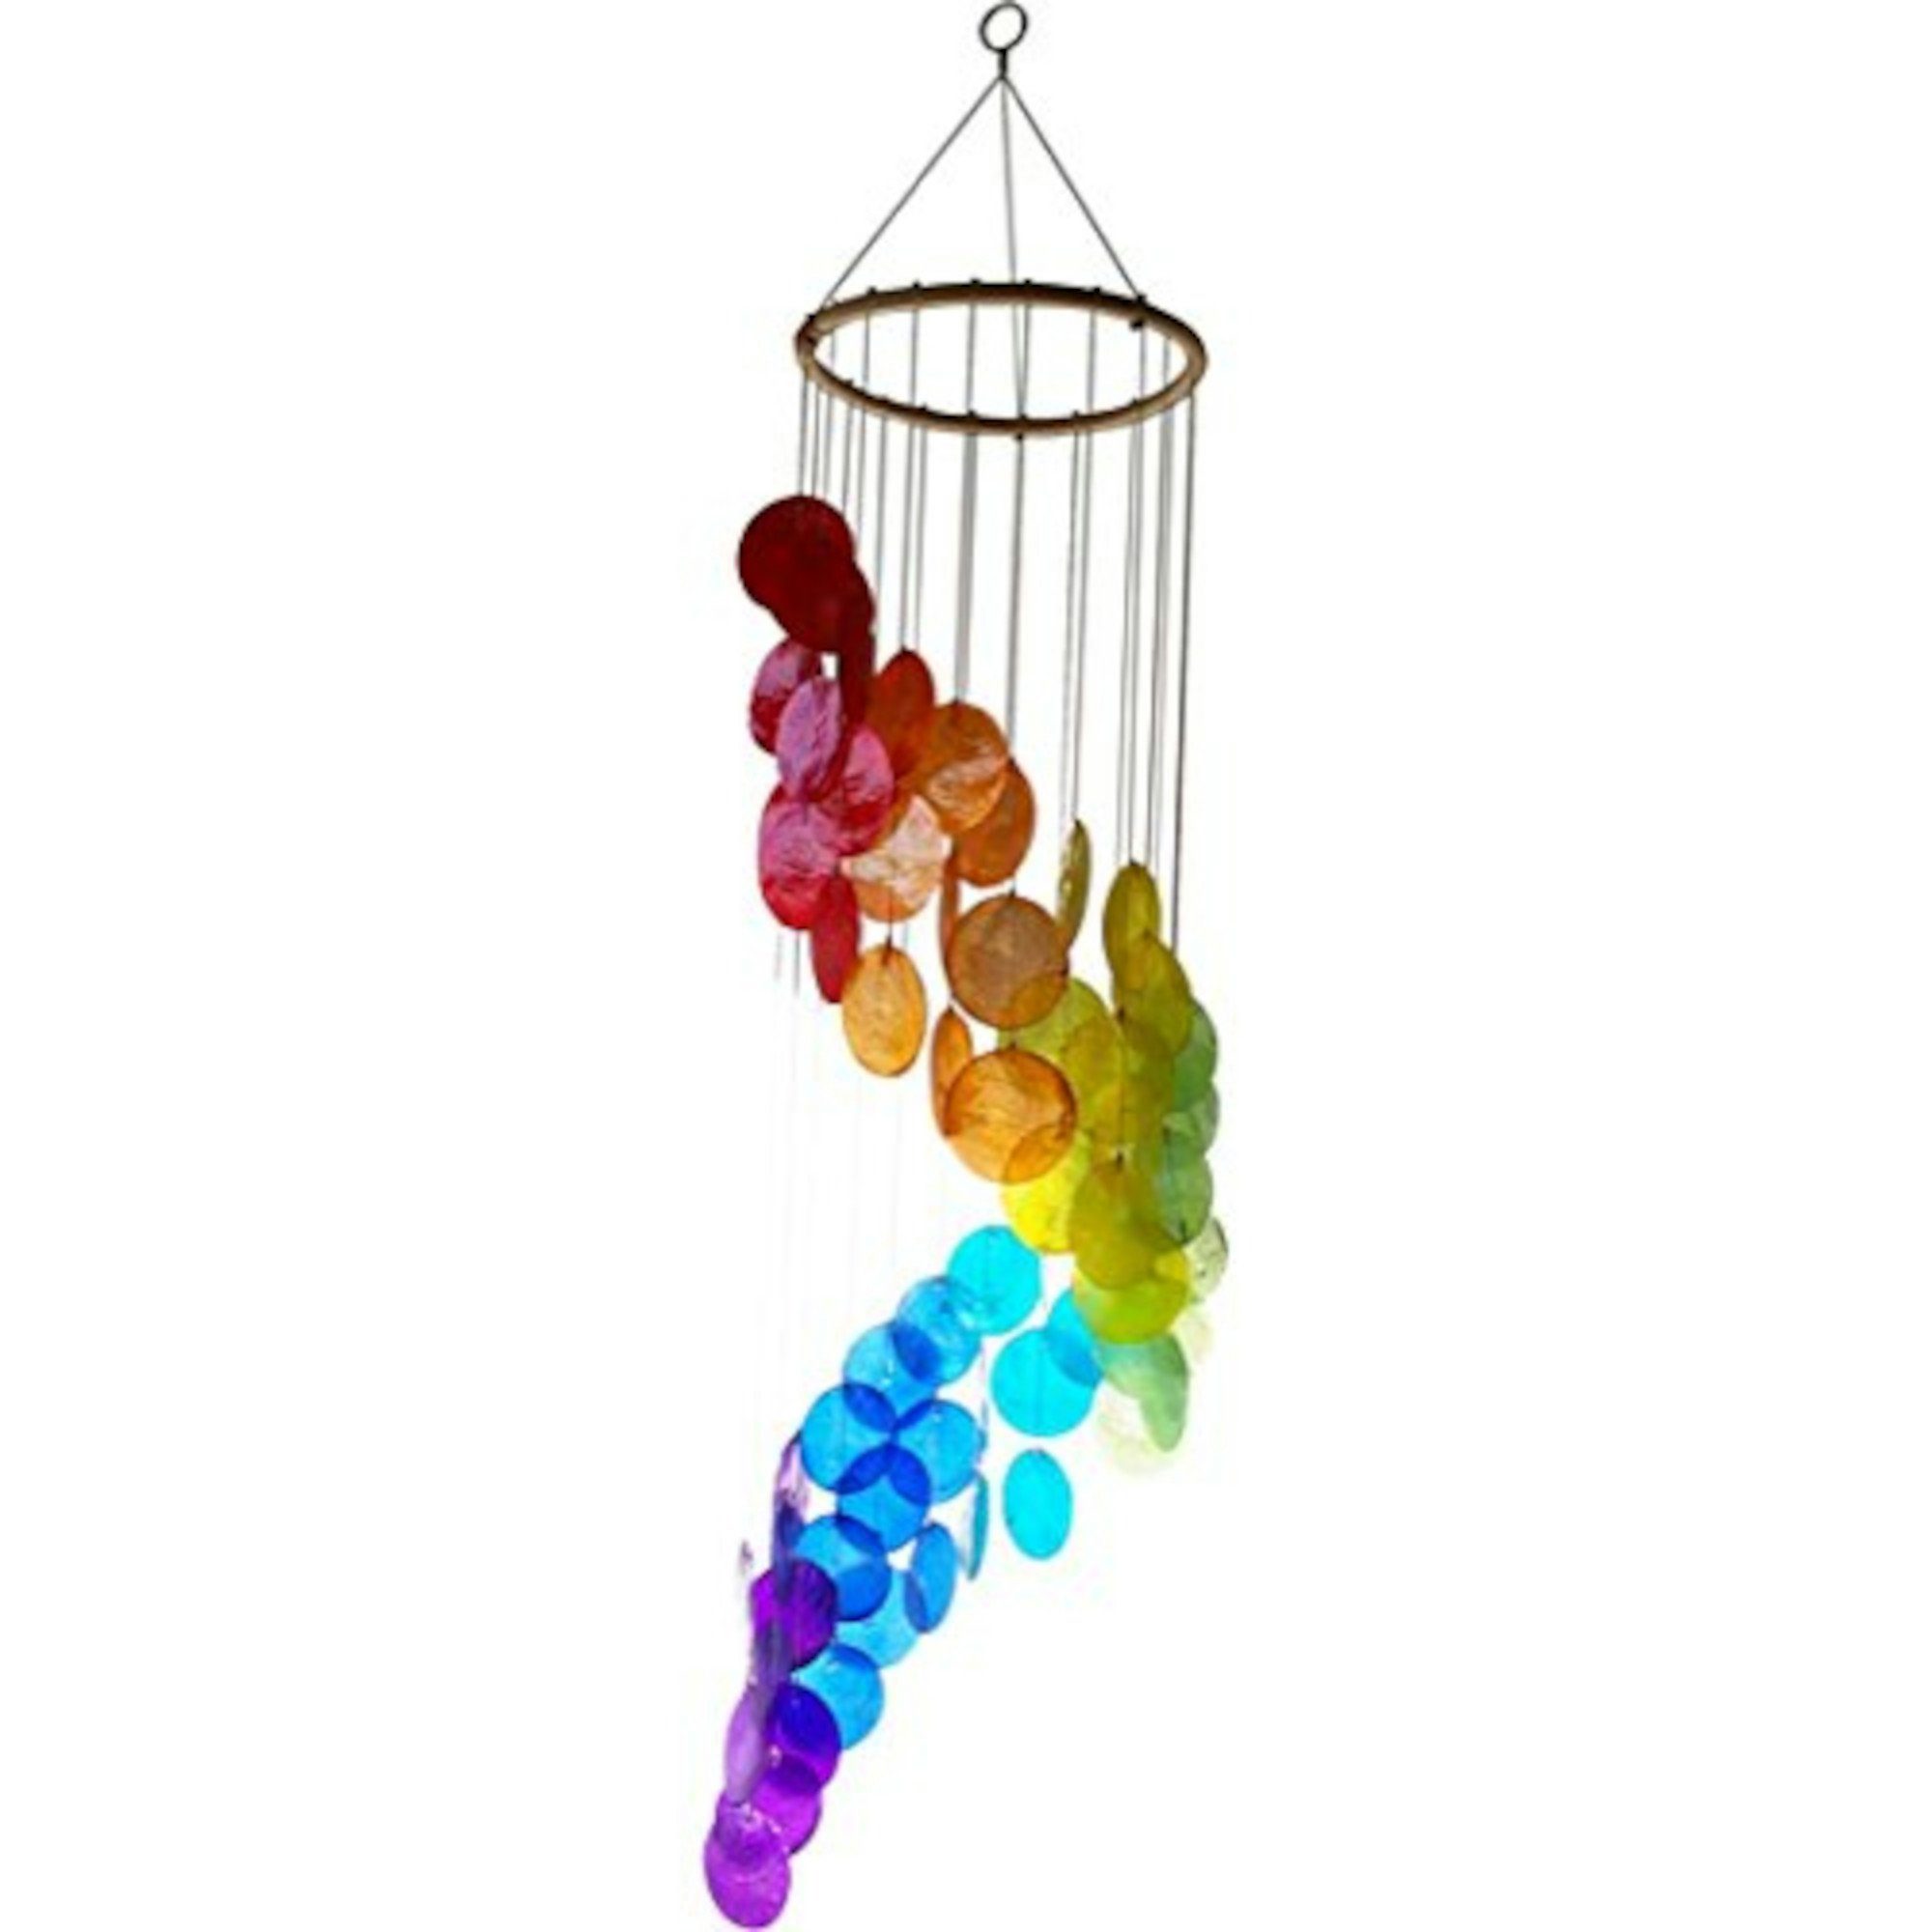 Muschel-Windspiel mit Regenbogen-Spirale Windspiel